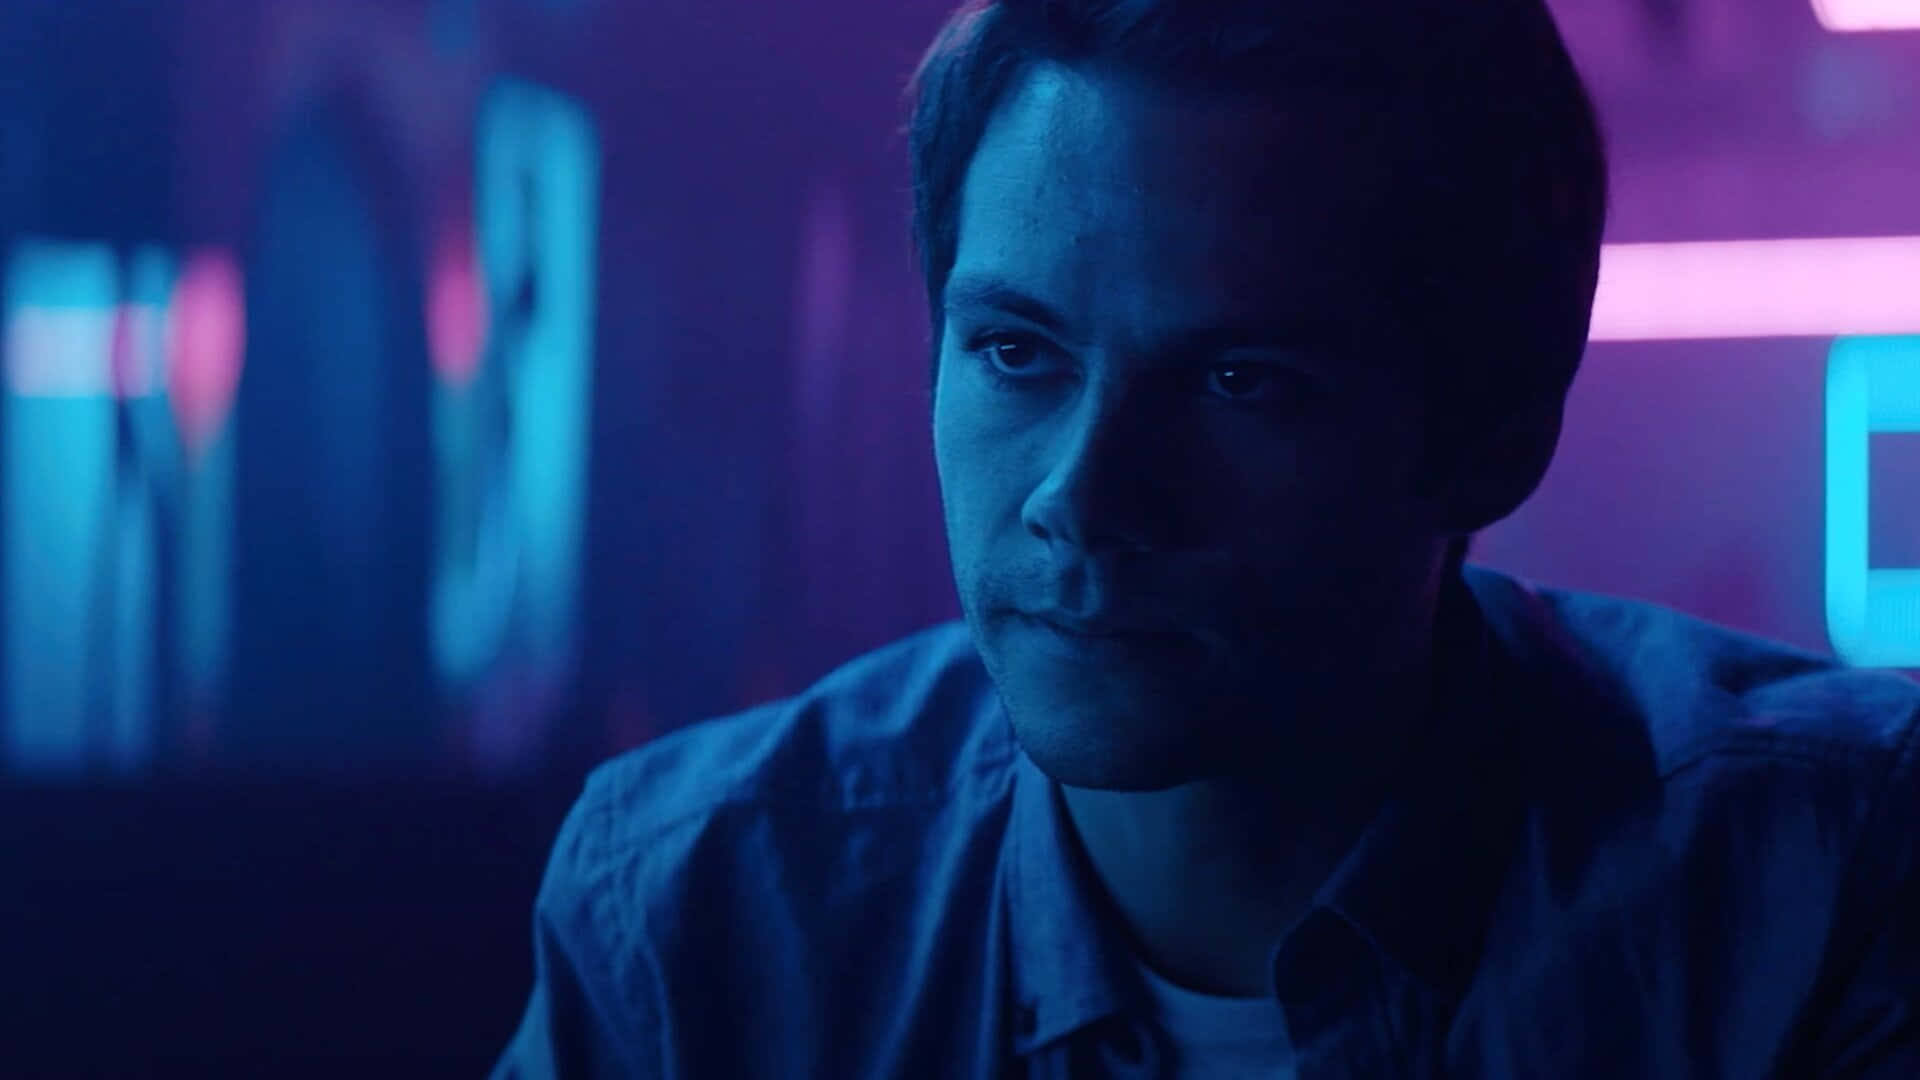 En mand i et blåt skjorte stirrer på et neonlys. Wallpaper